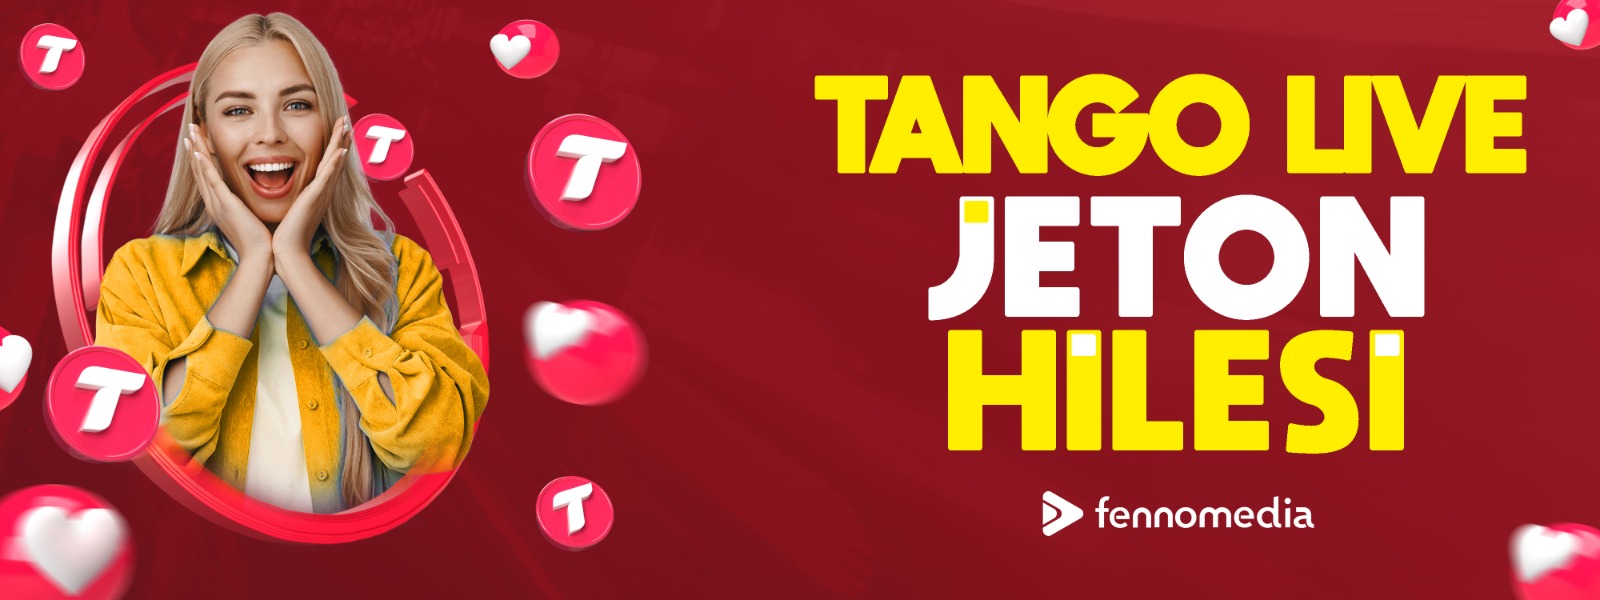 Tango Live Jeton Hilesi